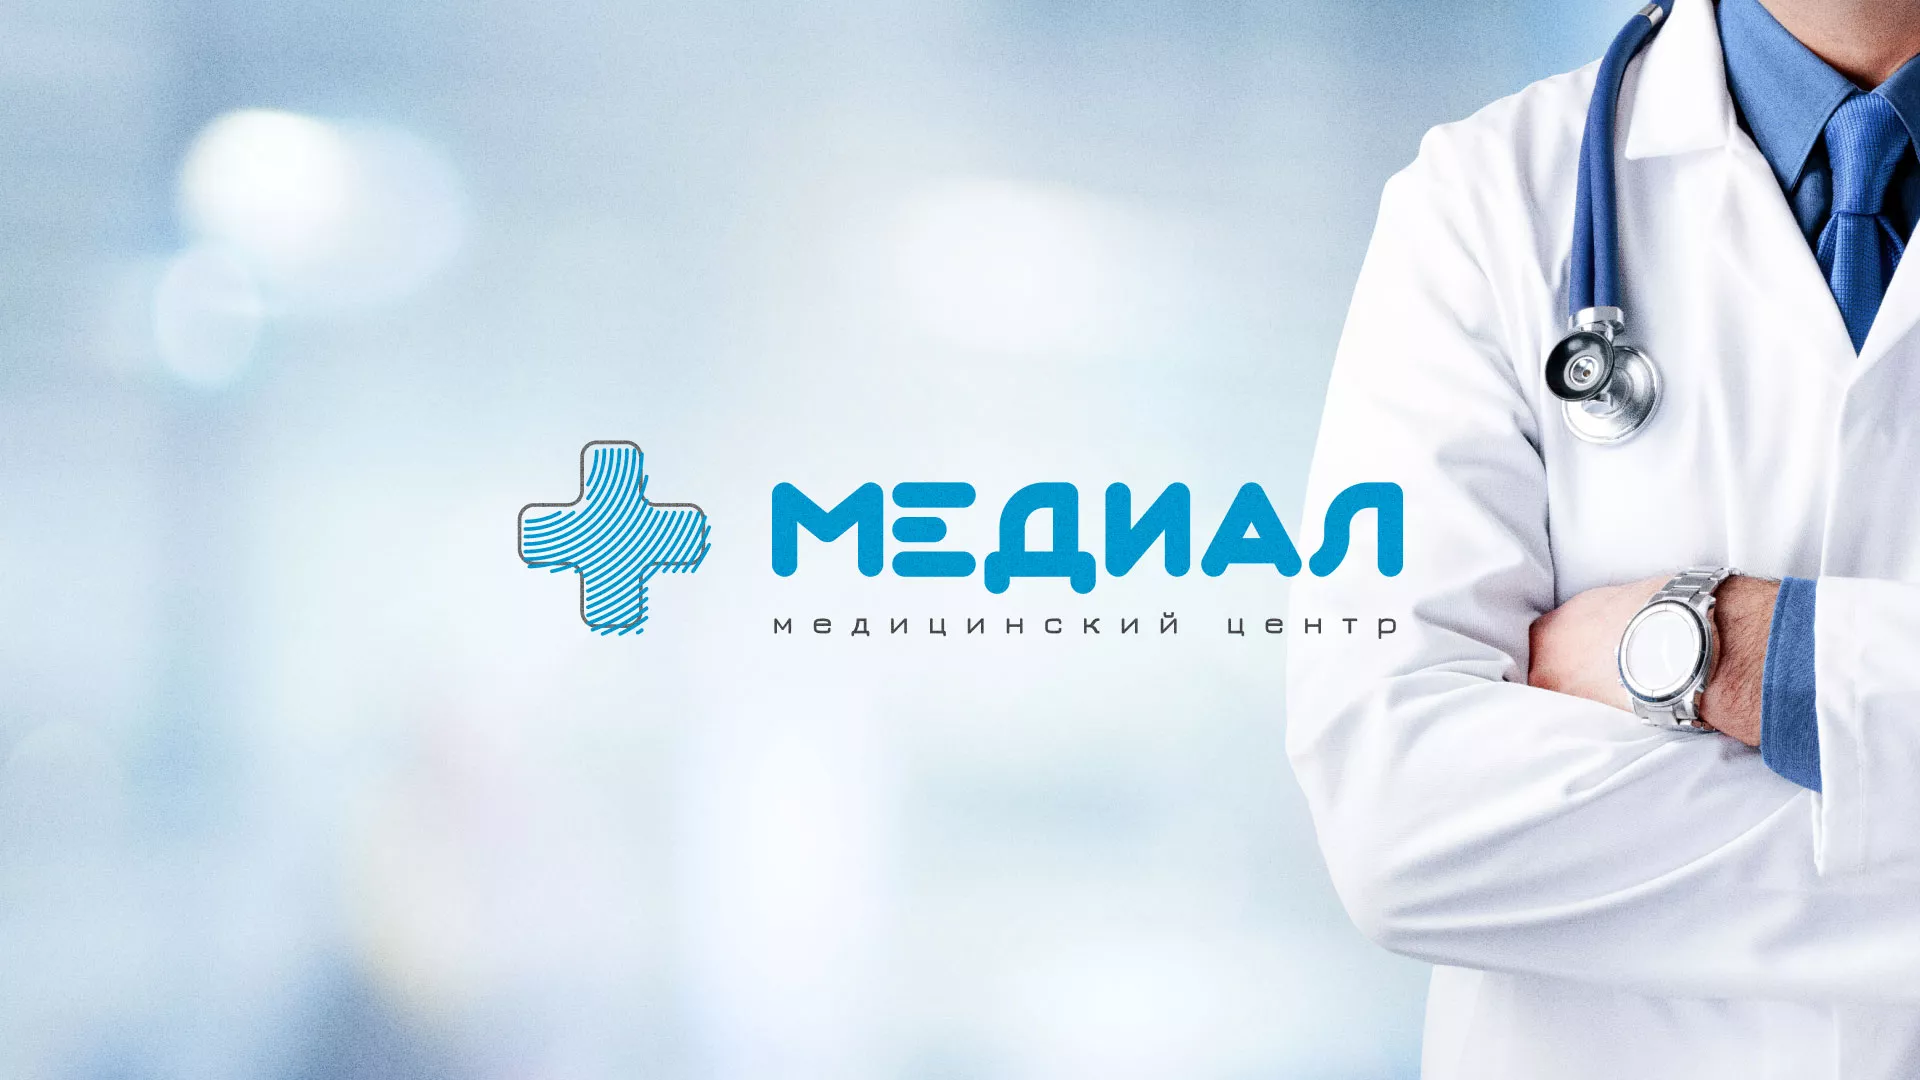 Создание сайта для медицинского центра «Медиал» в Навашино